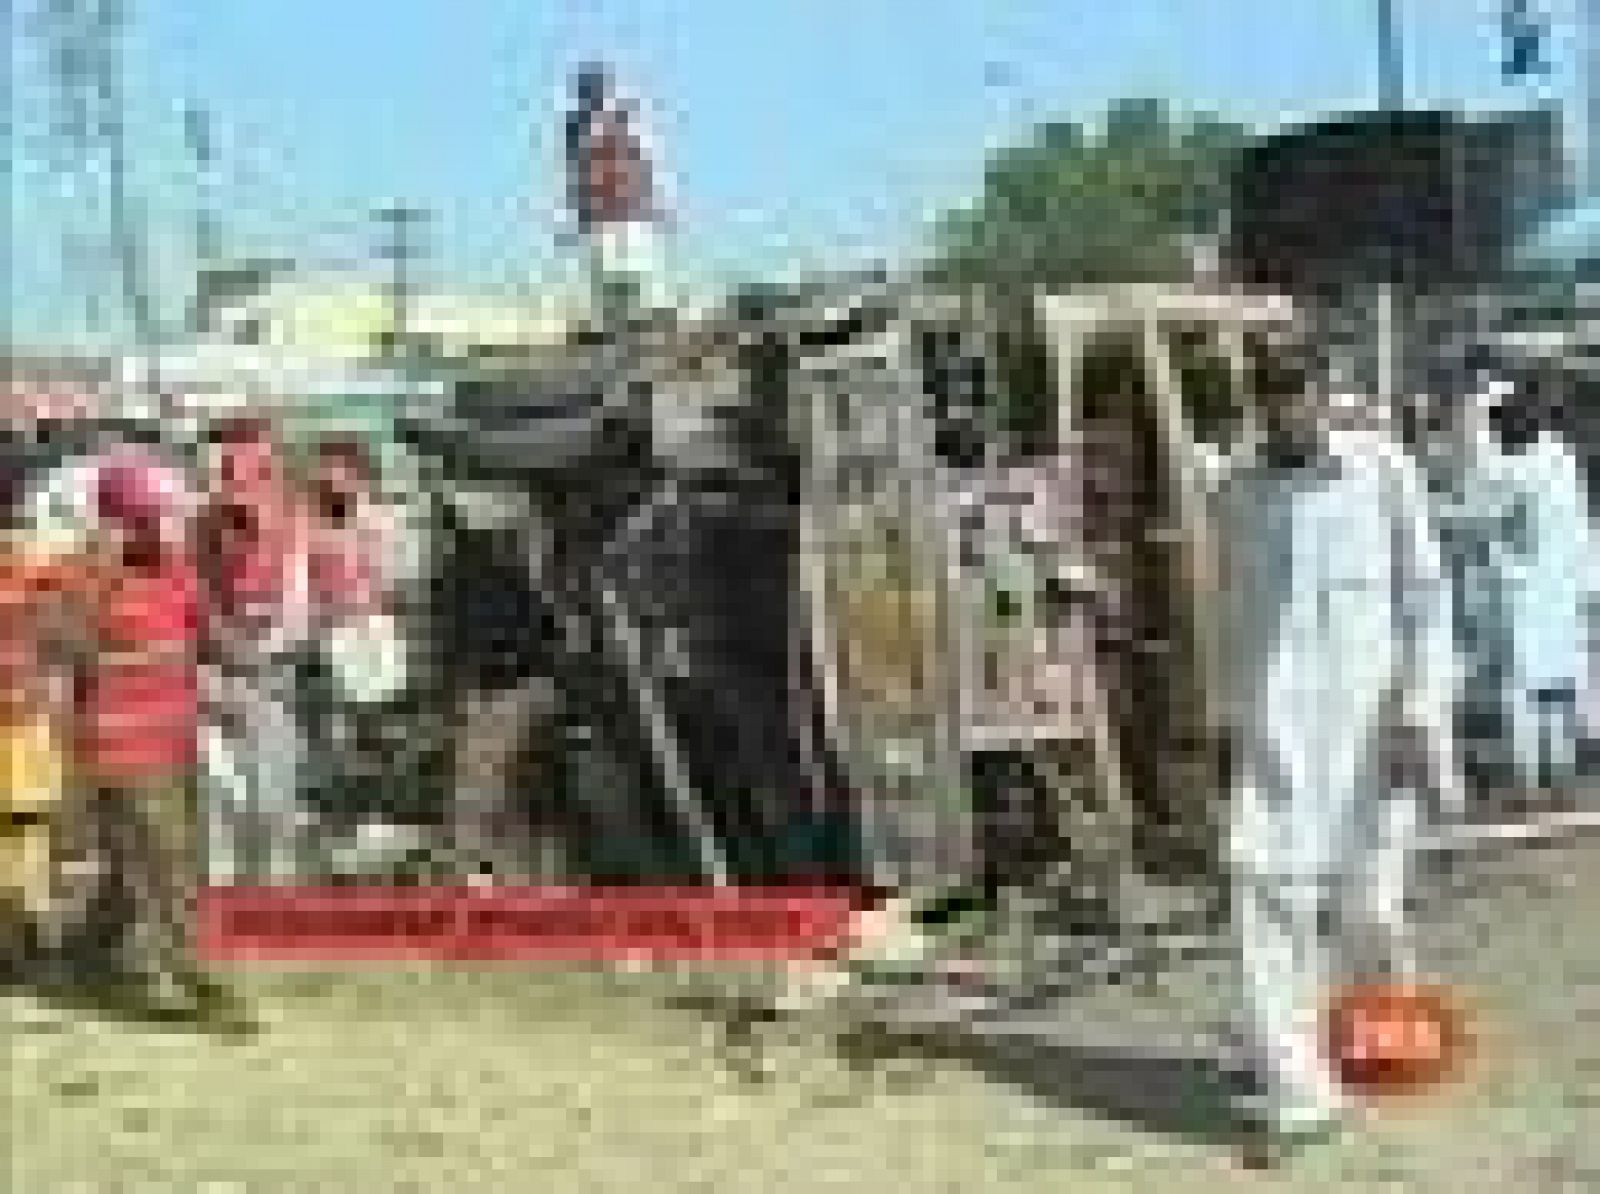 Al menos 42 personas han muerto y 100 han resultado heridas debido a una fuerte explosión en un mercado muy concurrido de la ciudad de Peshawar, capital de la conflictiva Provincia de la Frontera Noroeste de Pakistán (NWFP), según el ministro de Información provincial, Mian Muhammad Iftikhar.